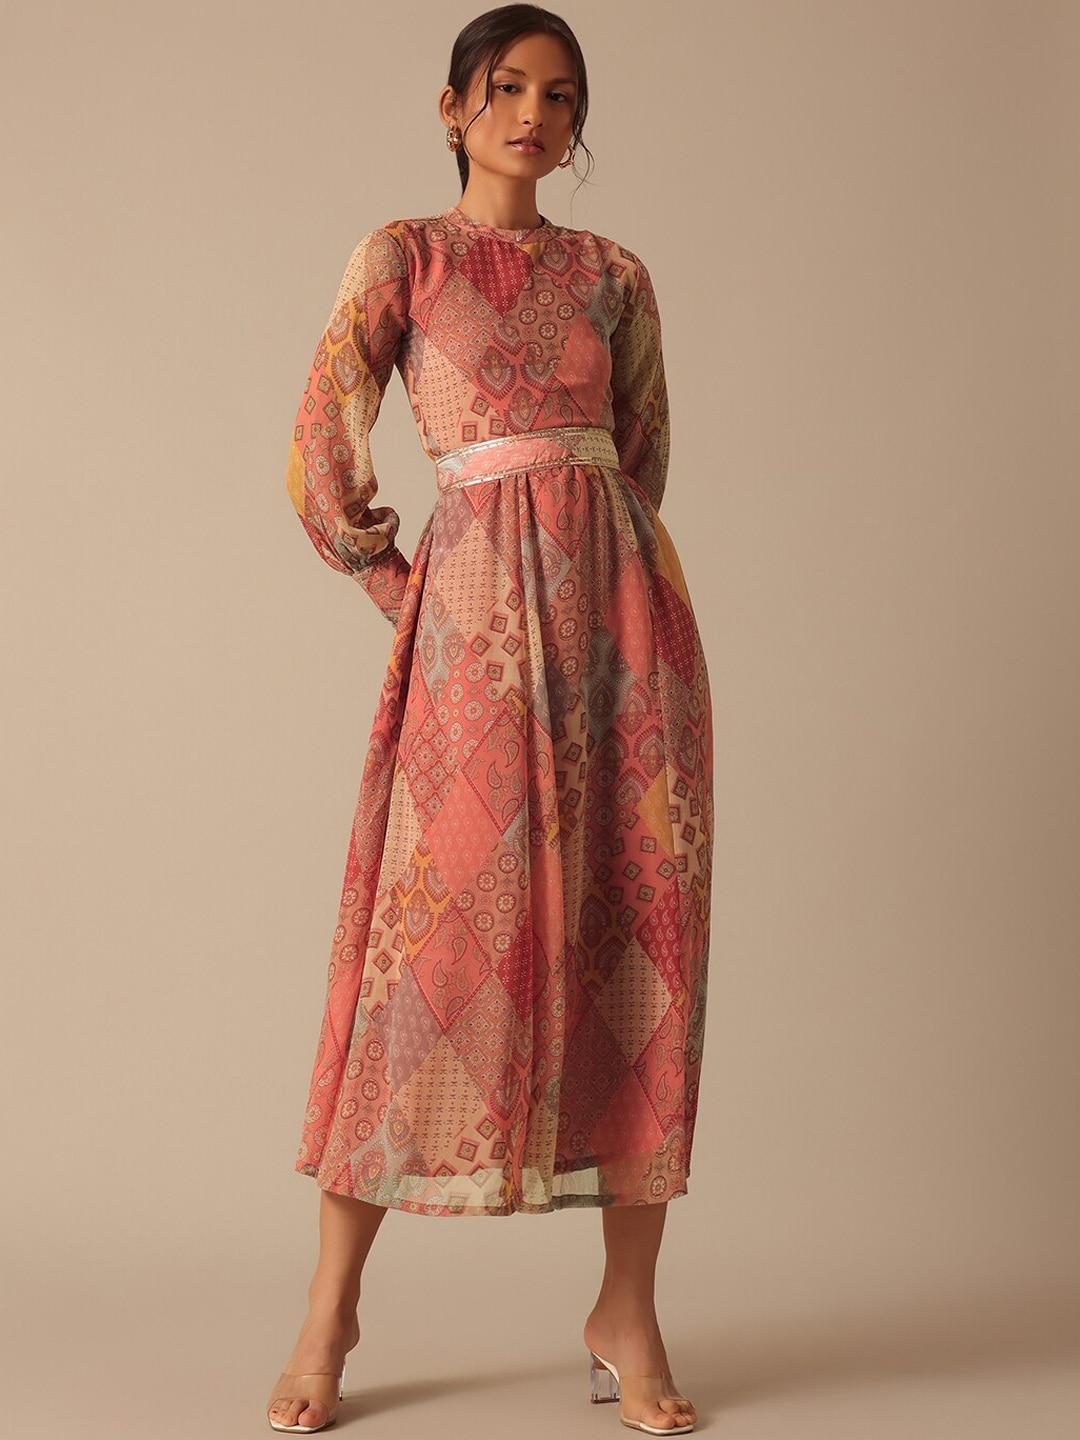 kalki fashion ethnic printed chiffon fit and flare midi ethnic dress with embellished belt